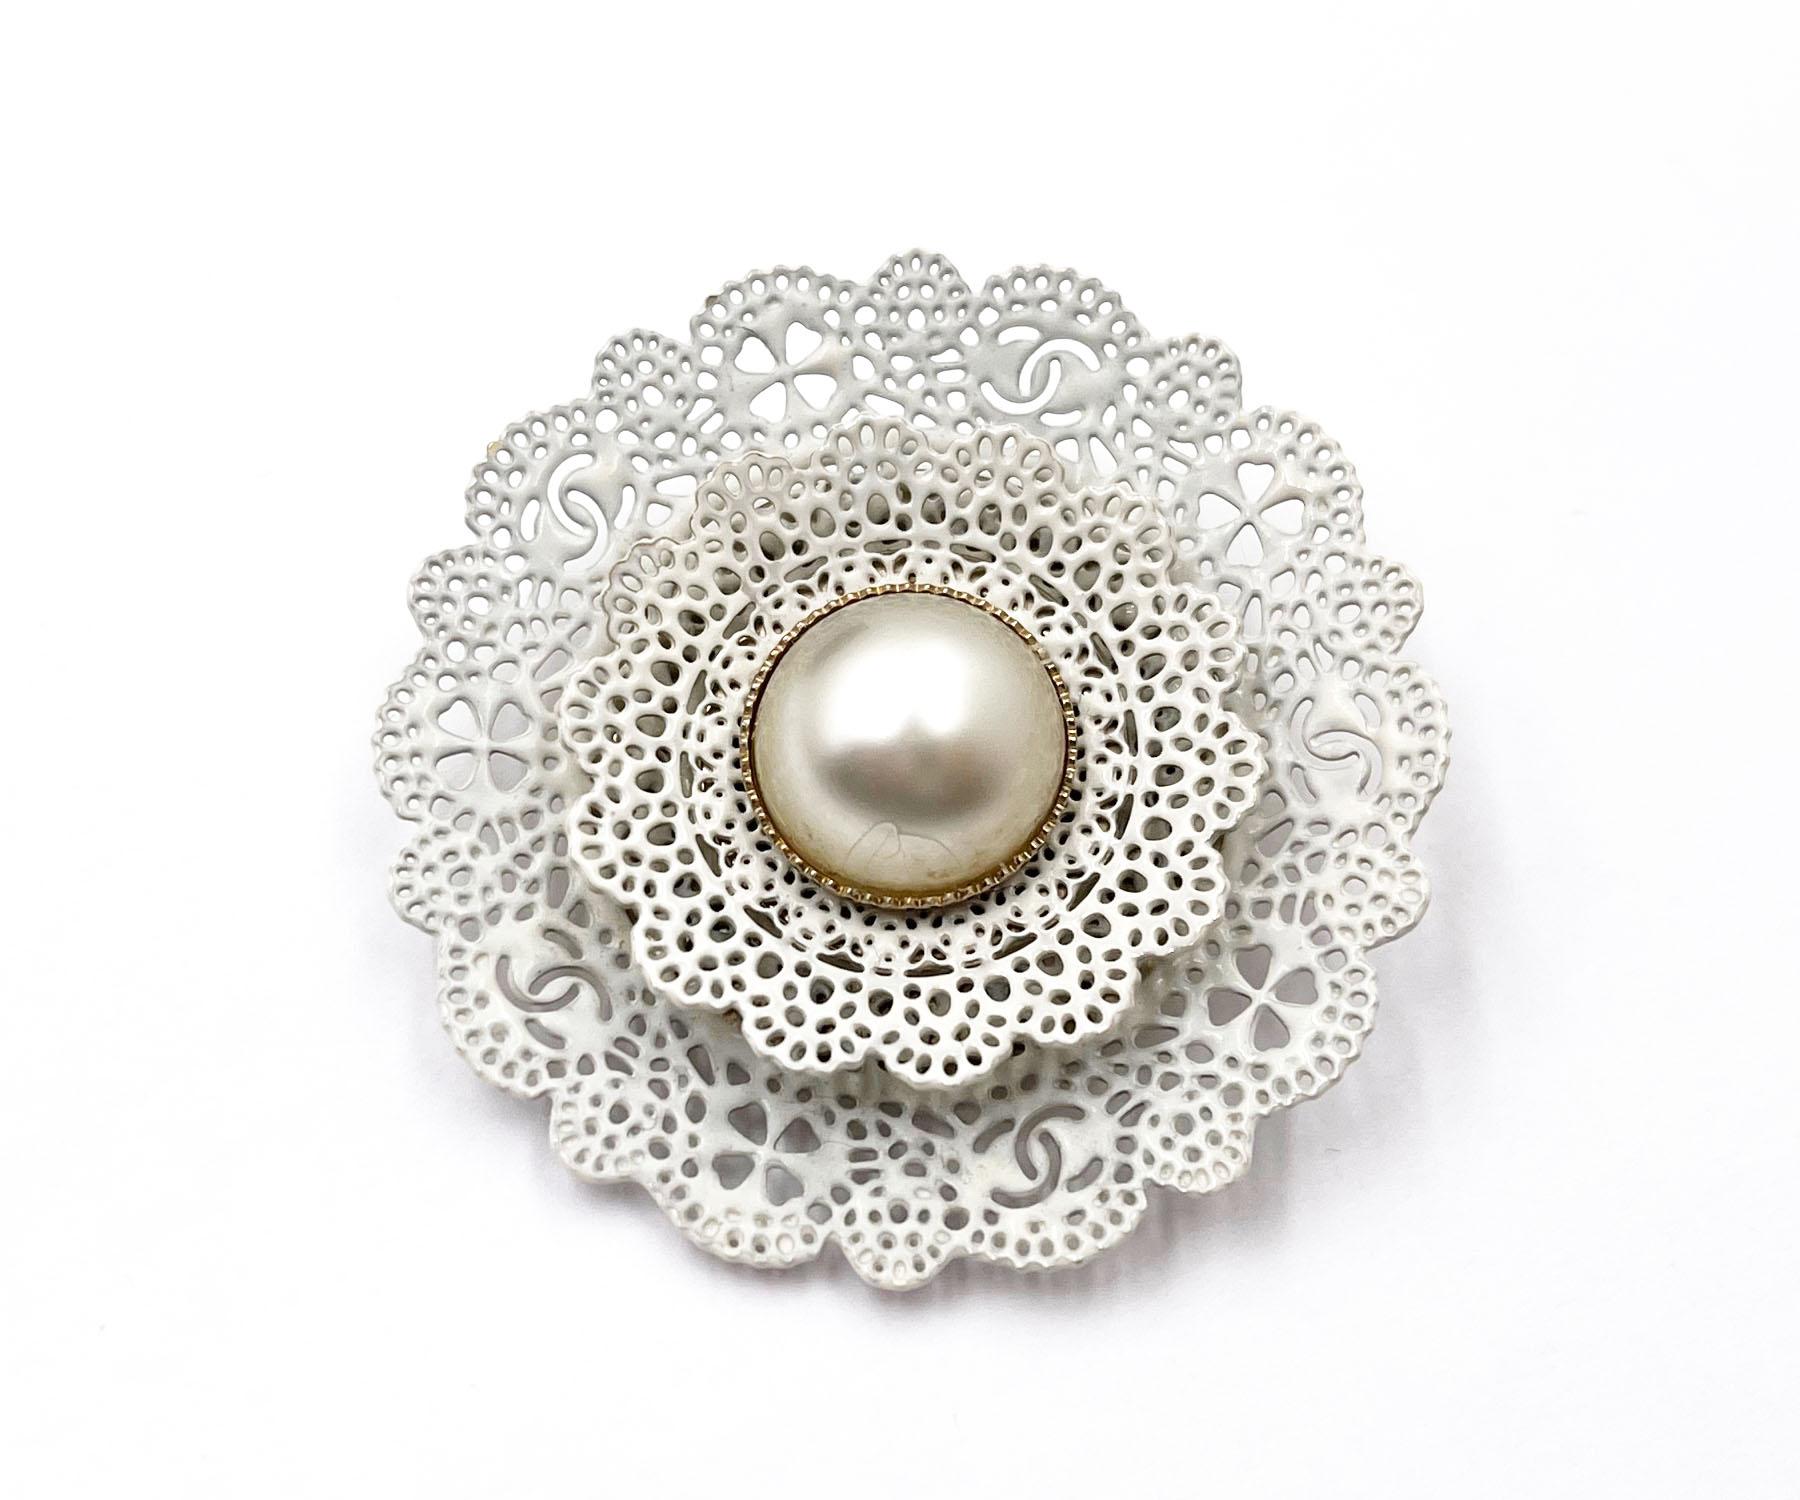 Chanel Perle CC Weiße Spitzenbrosche

* Markiert 15
*Hergestellt in Italien
*Kommt mit der Originalverpackung 

- Es ist ungefähr 2